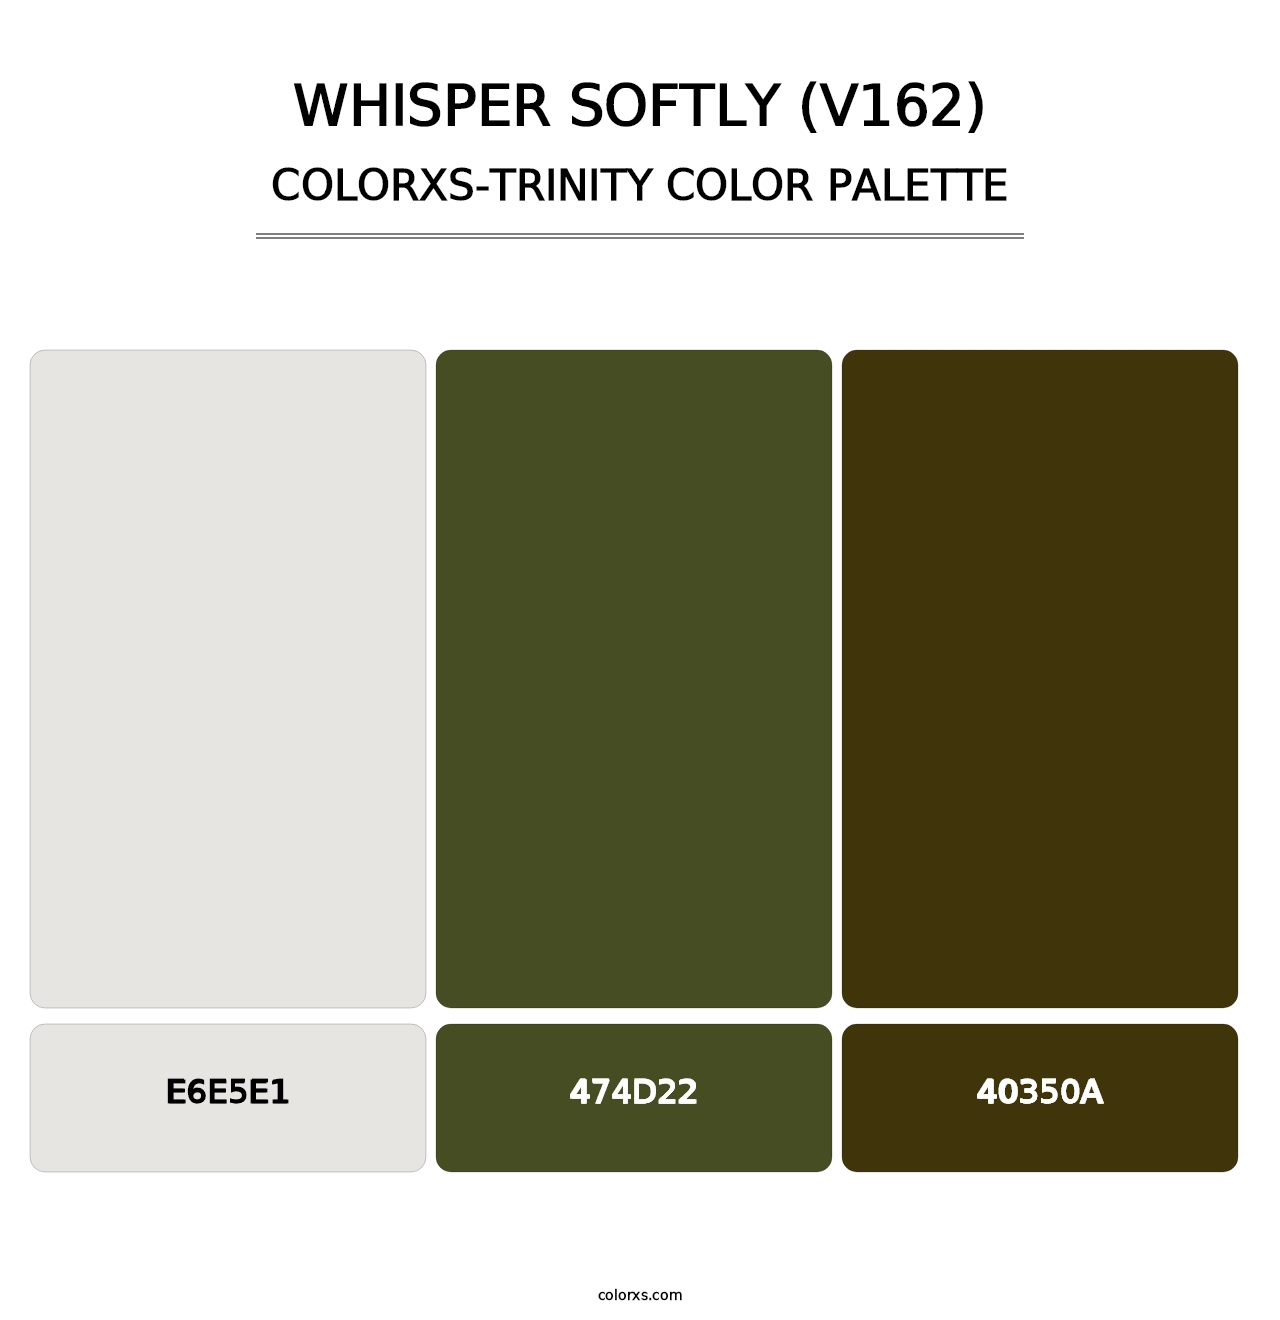 Whisper Softly (V162) - Colorxs Trinity Palette